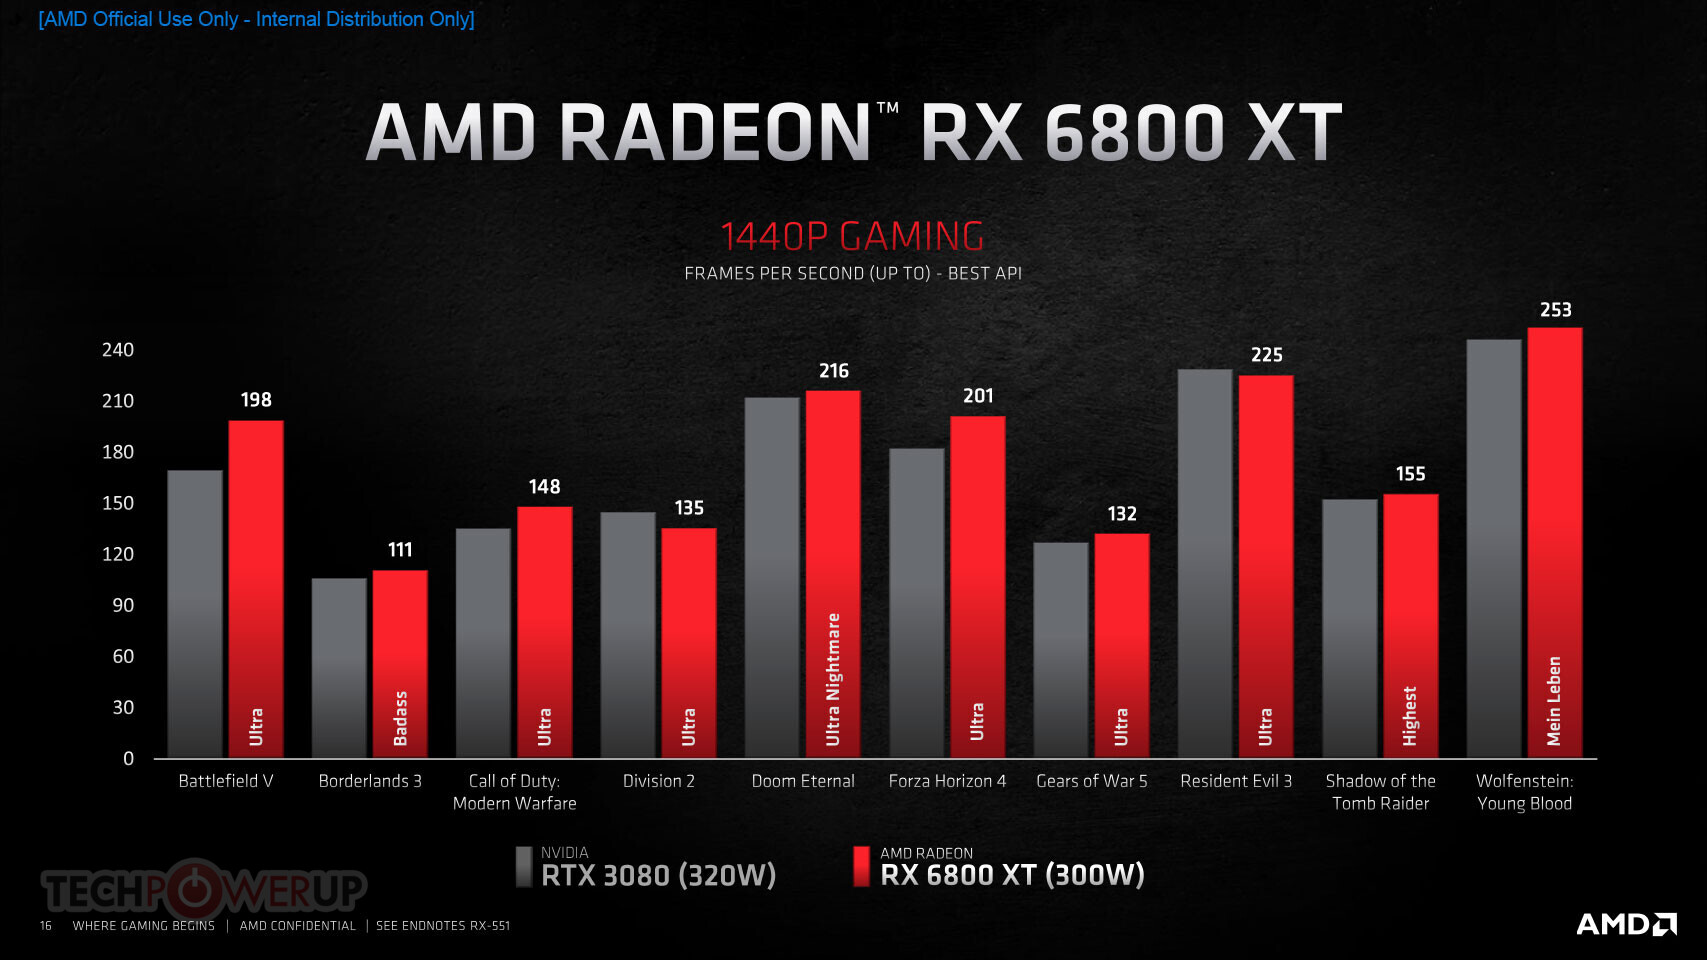 RX 6800 XT vs RTX 3080 vs RTX 3090 - Test in 8 Games l 4K l